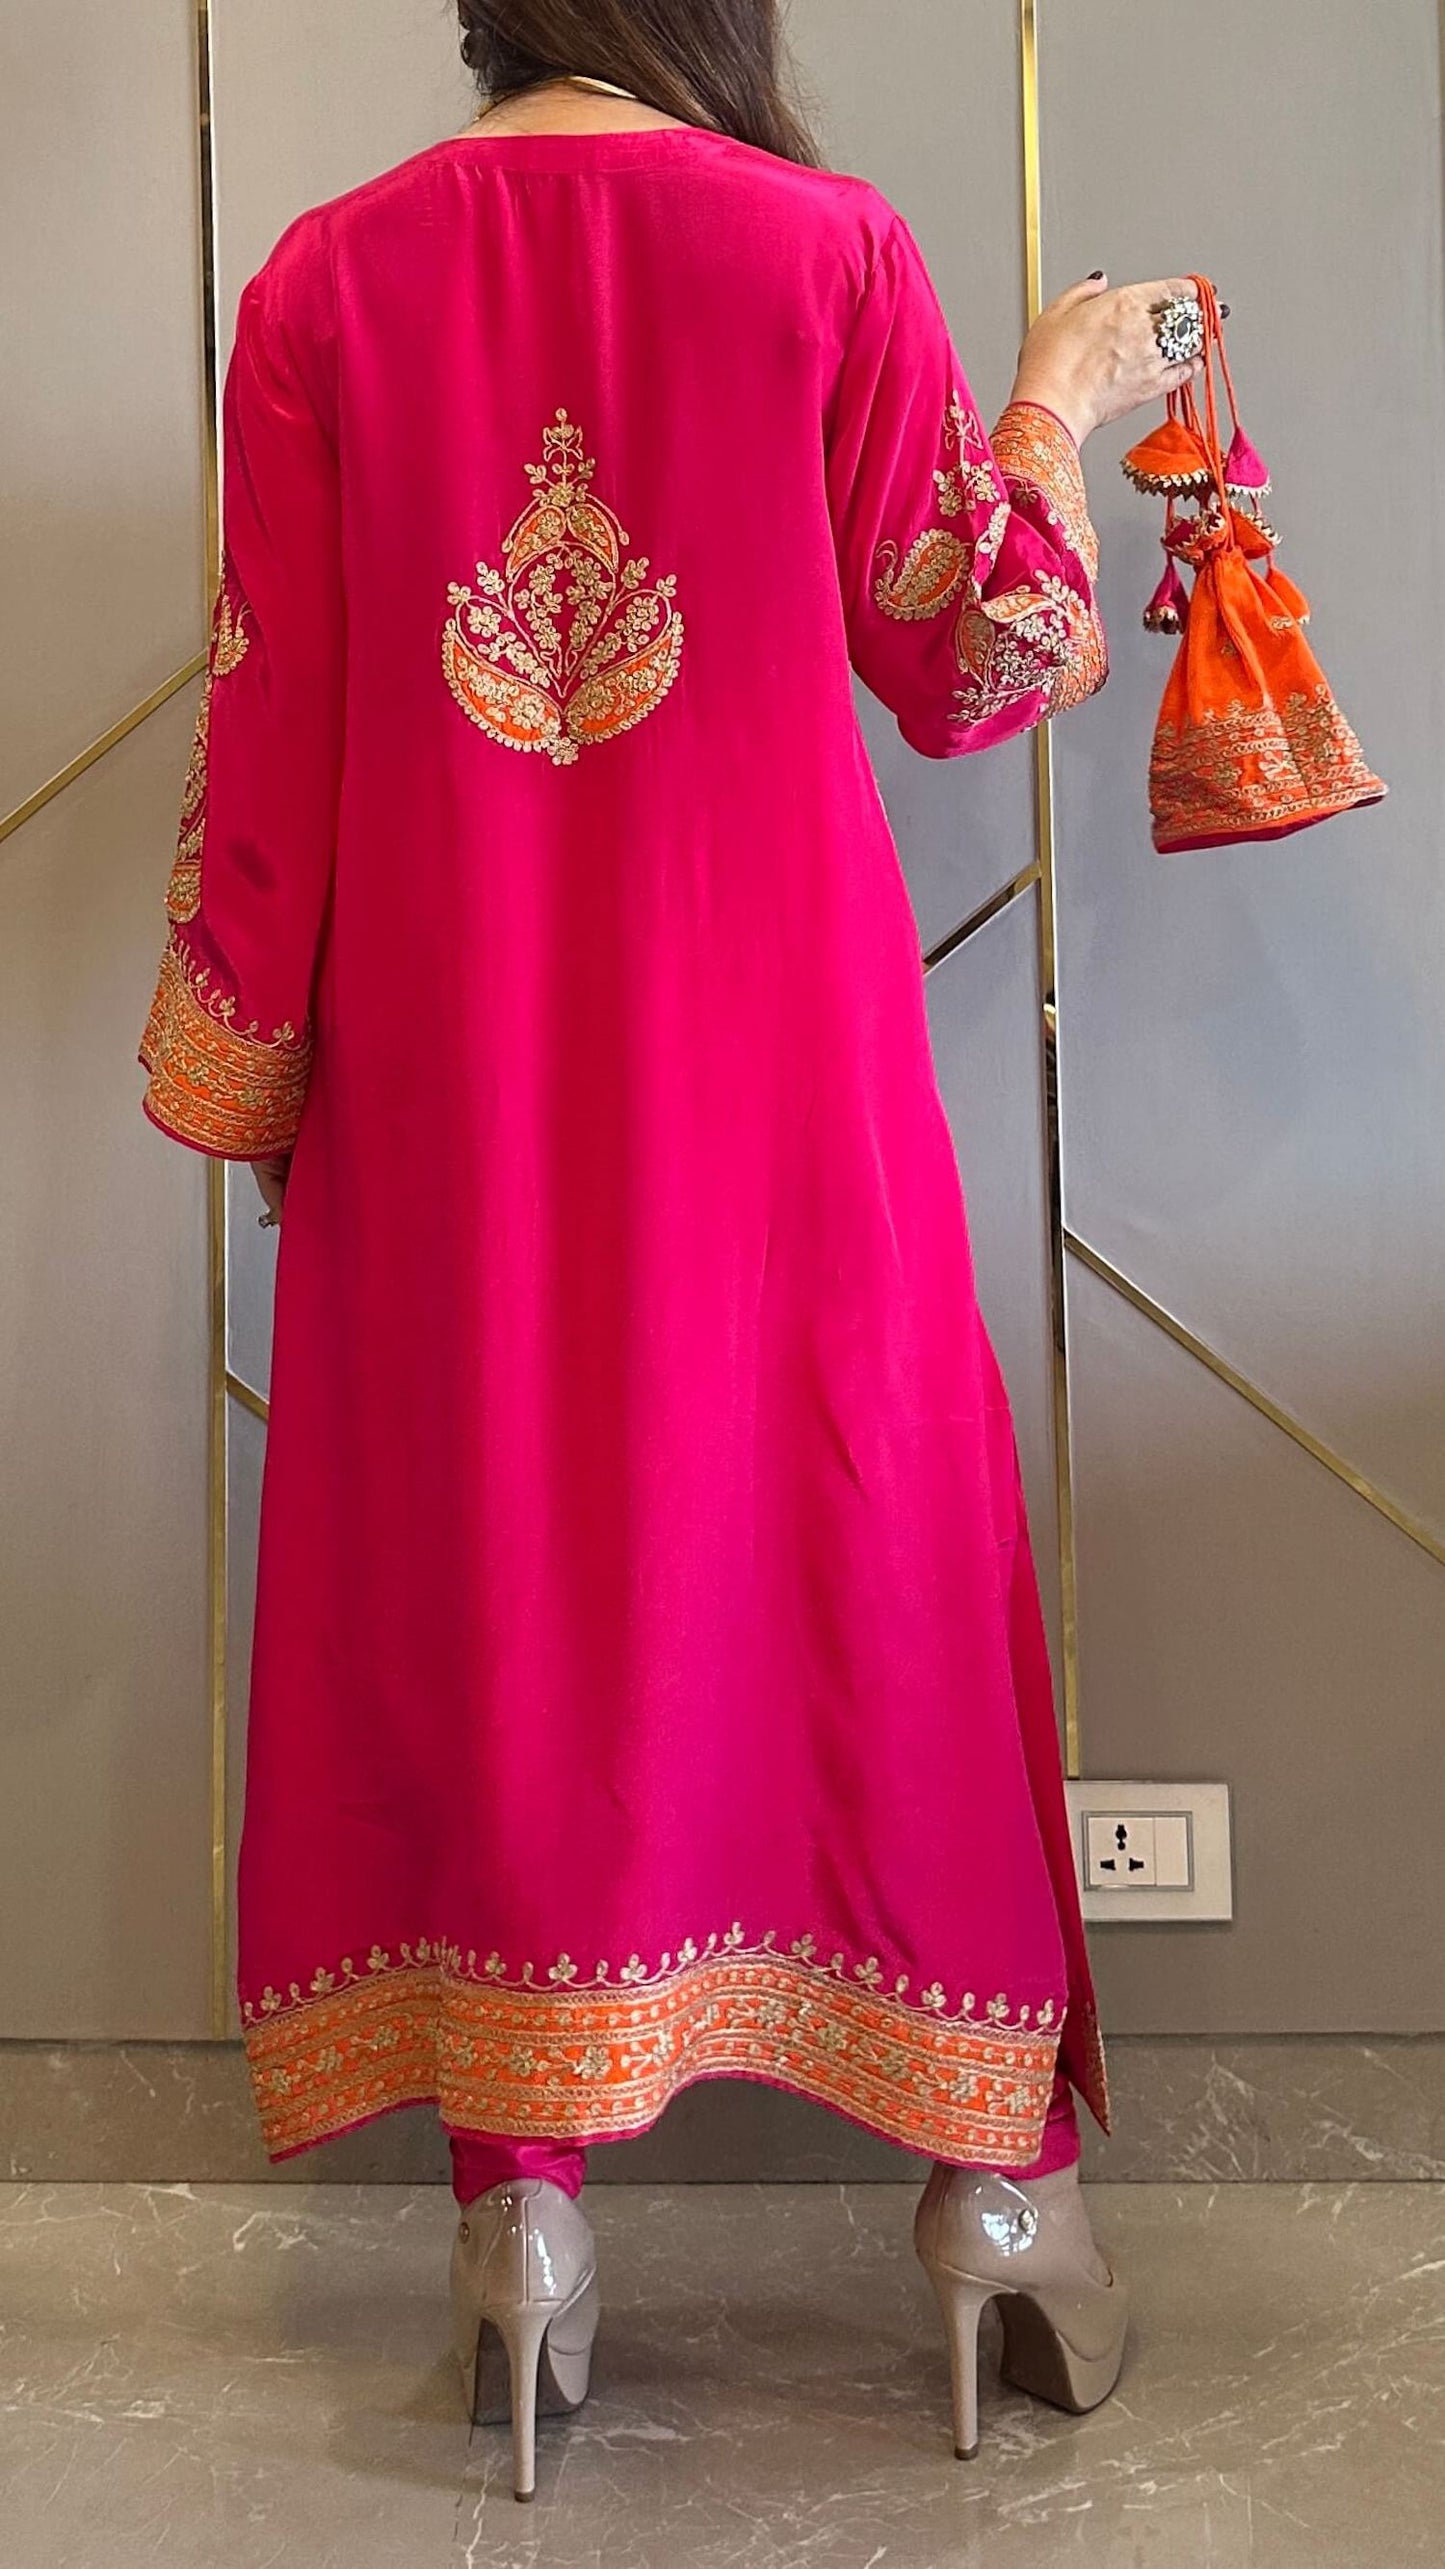 Rani Pink Applique Crepe Kashmiri-Phiran Kurta with Churidar and Matching Potli